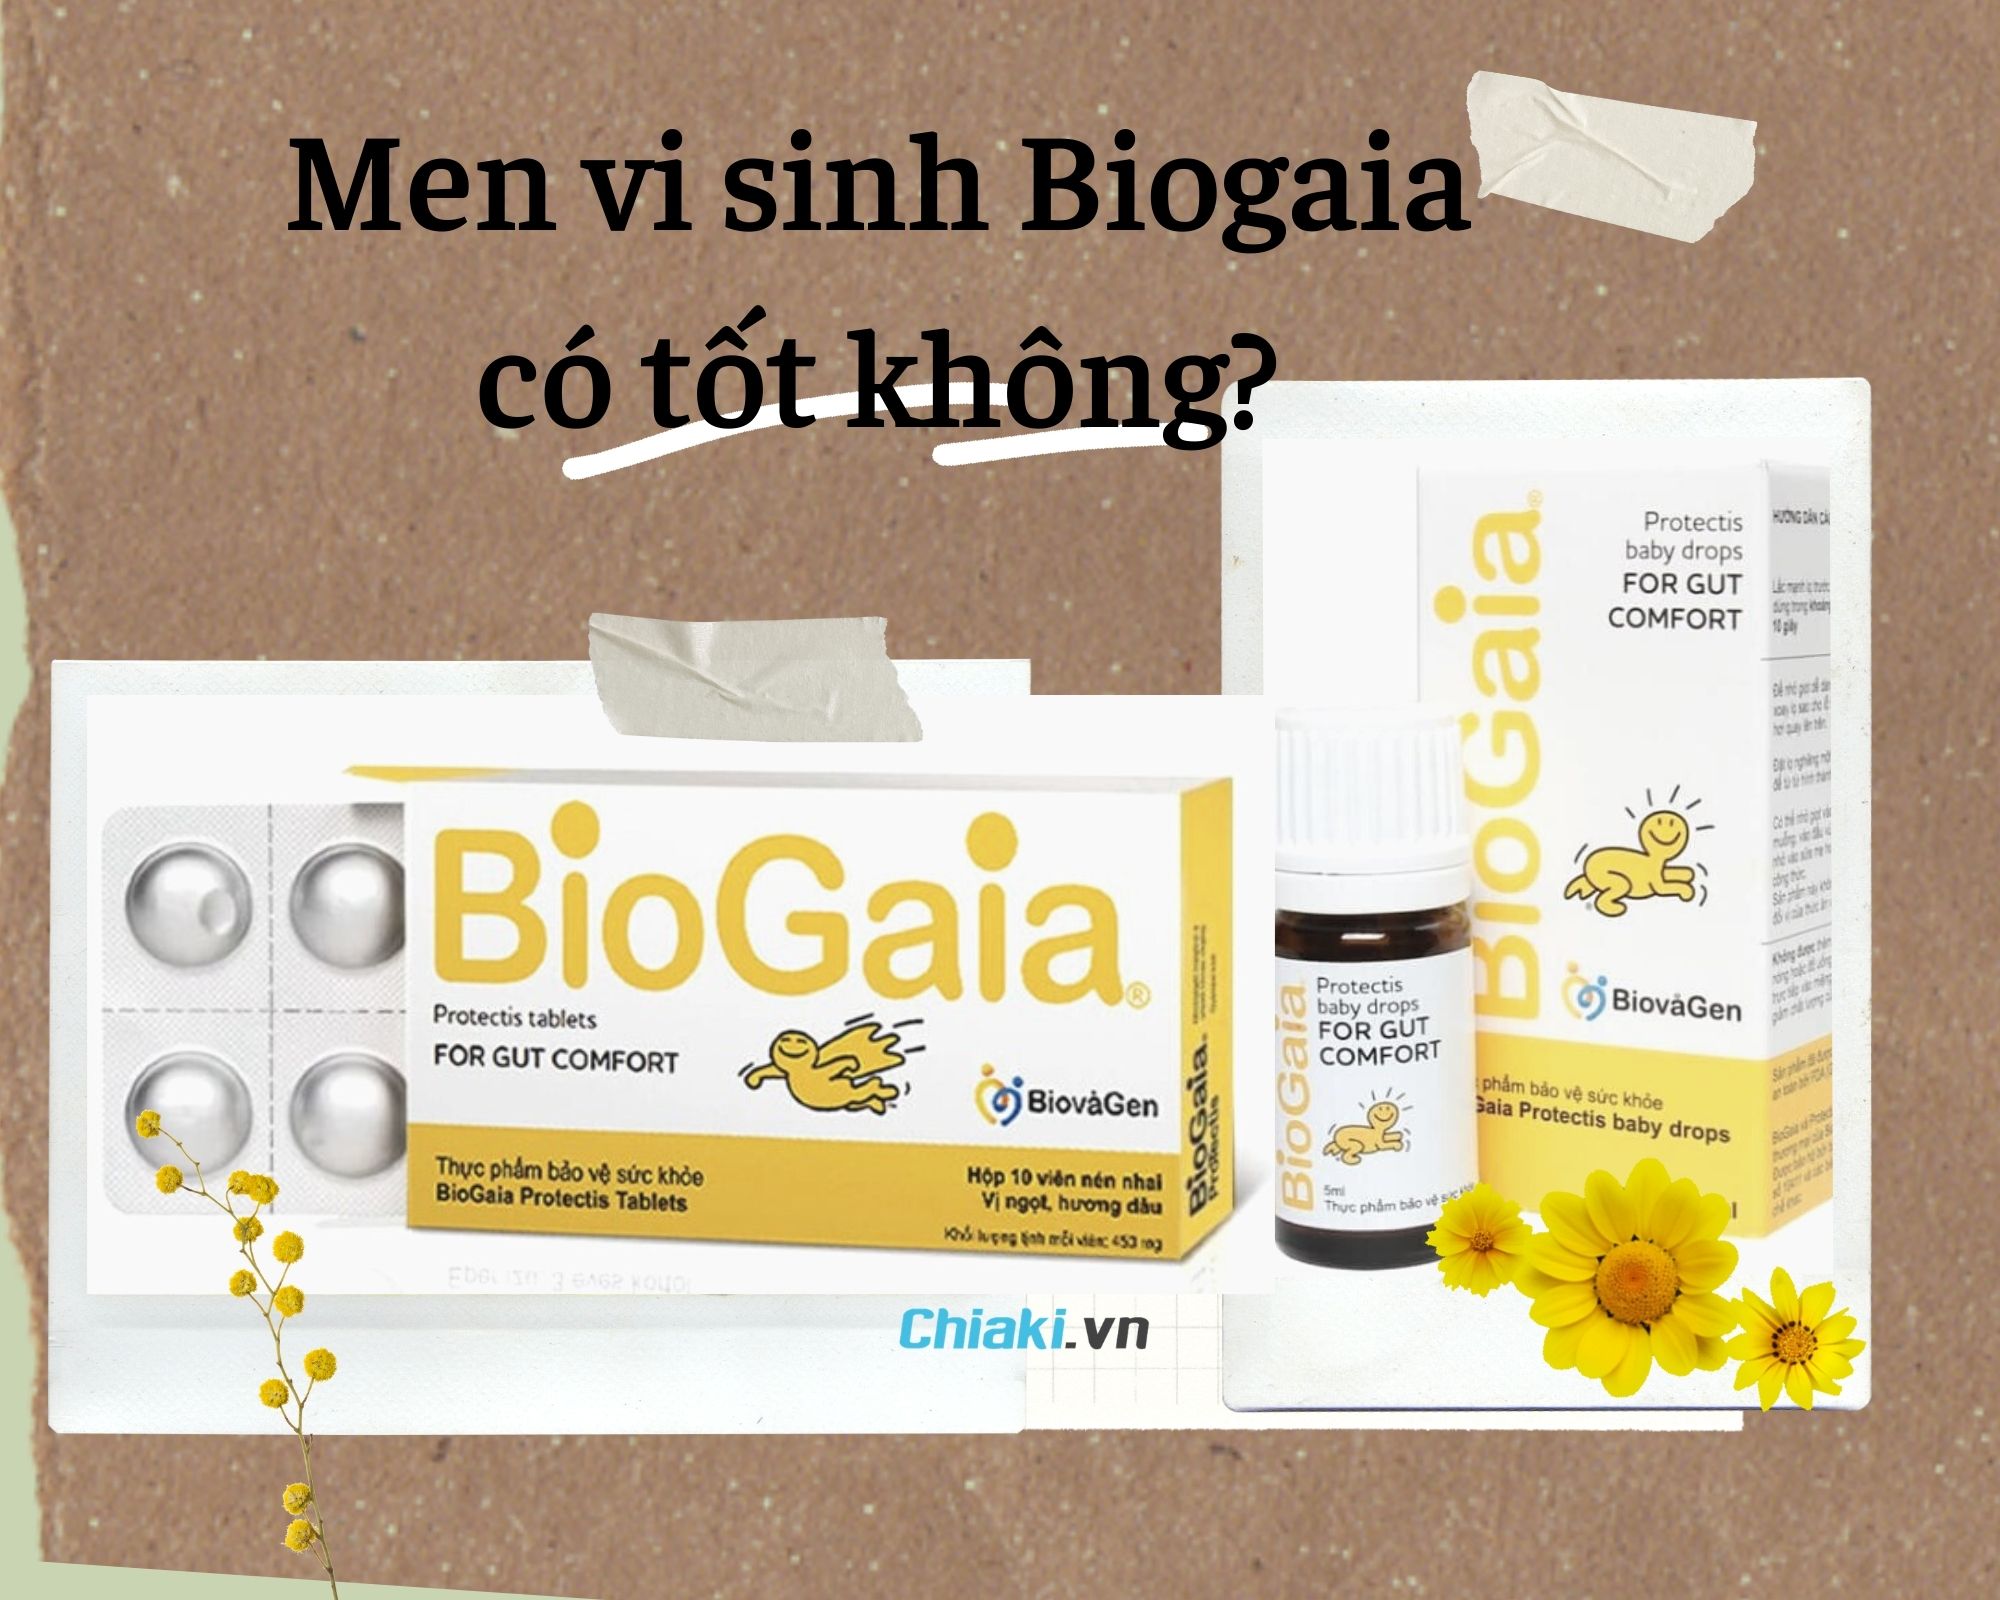 Biogaia có tác dụng gì? Biogaia có mấy loại ? Giá bao nhiêu?